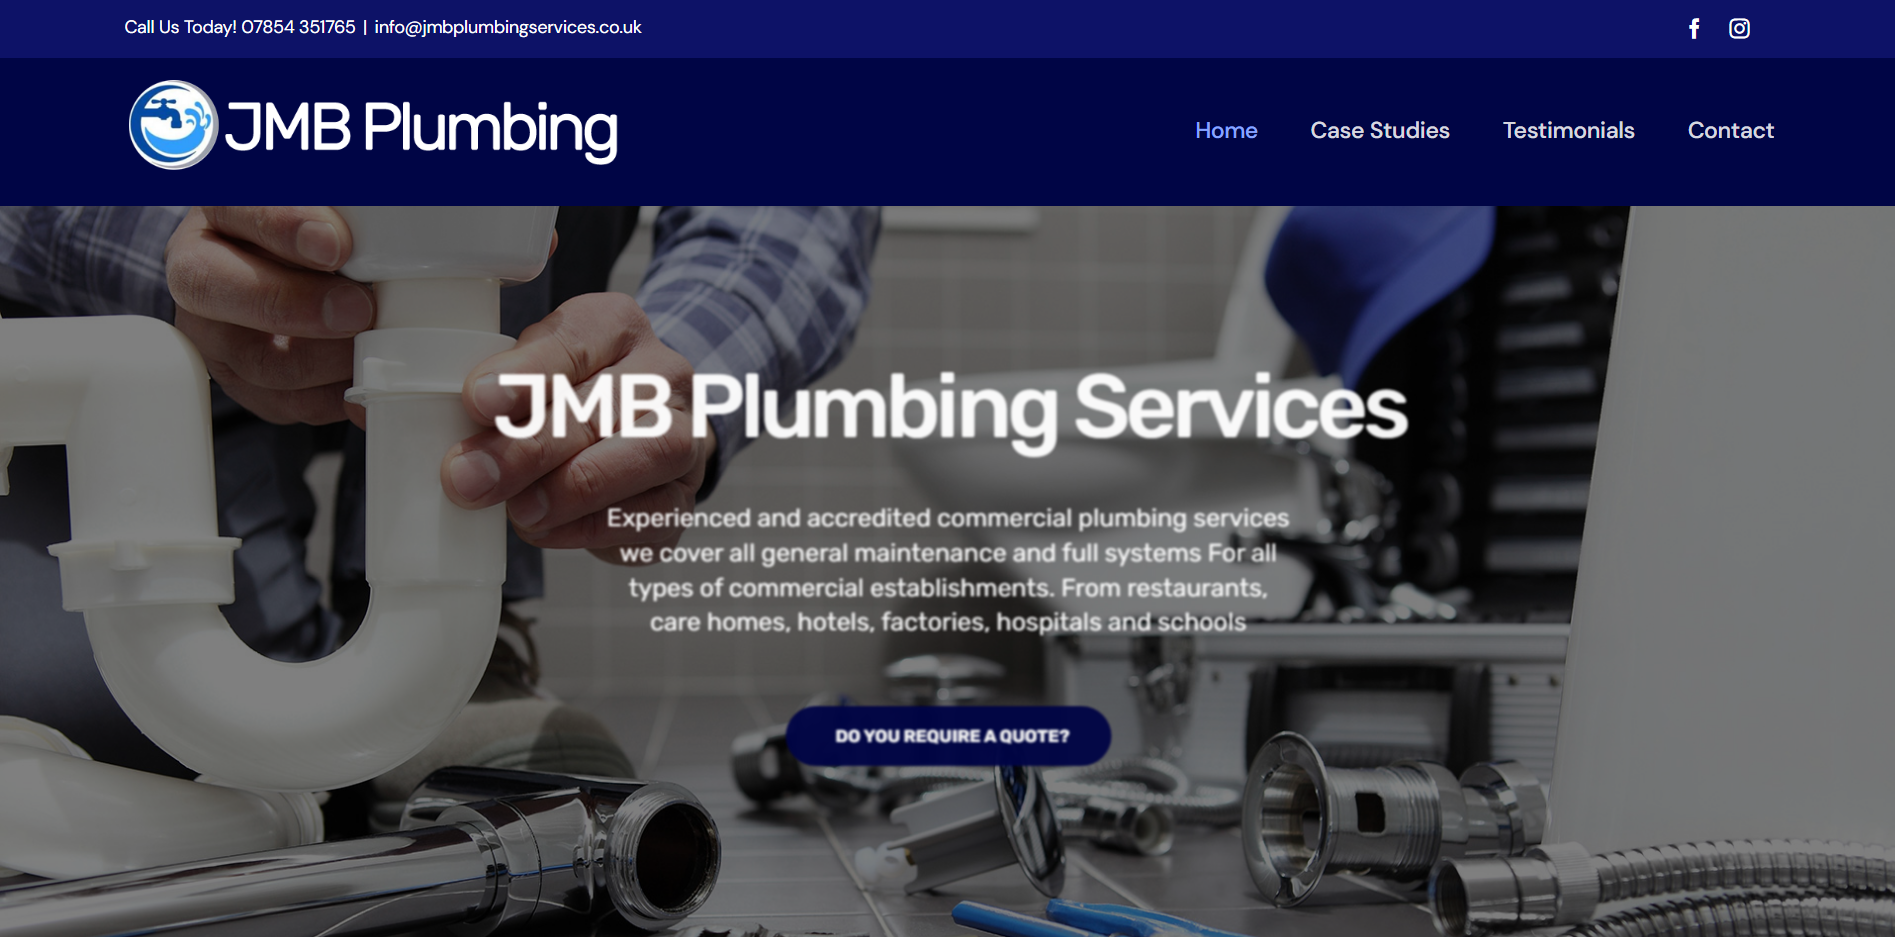 JMB Plumbing